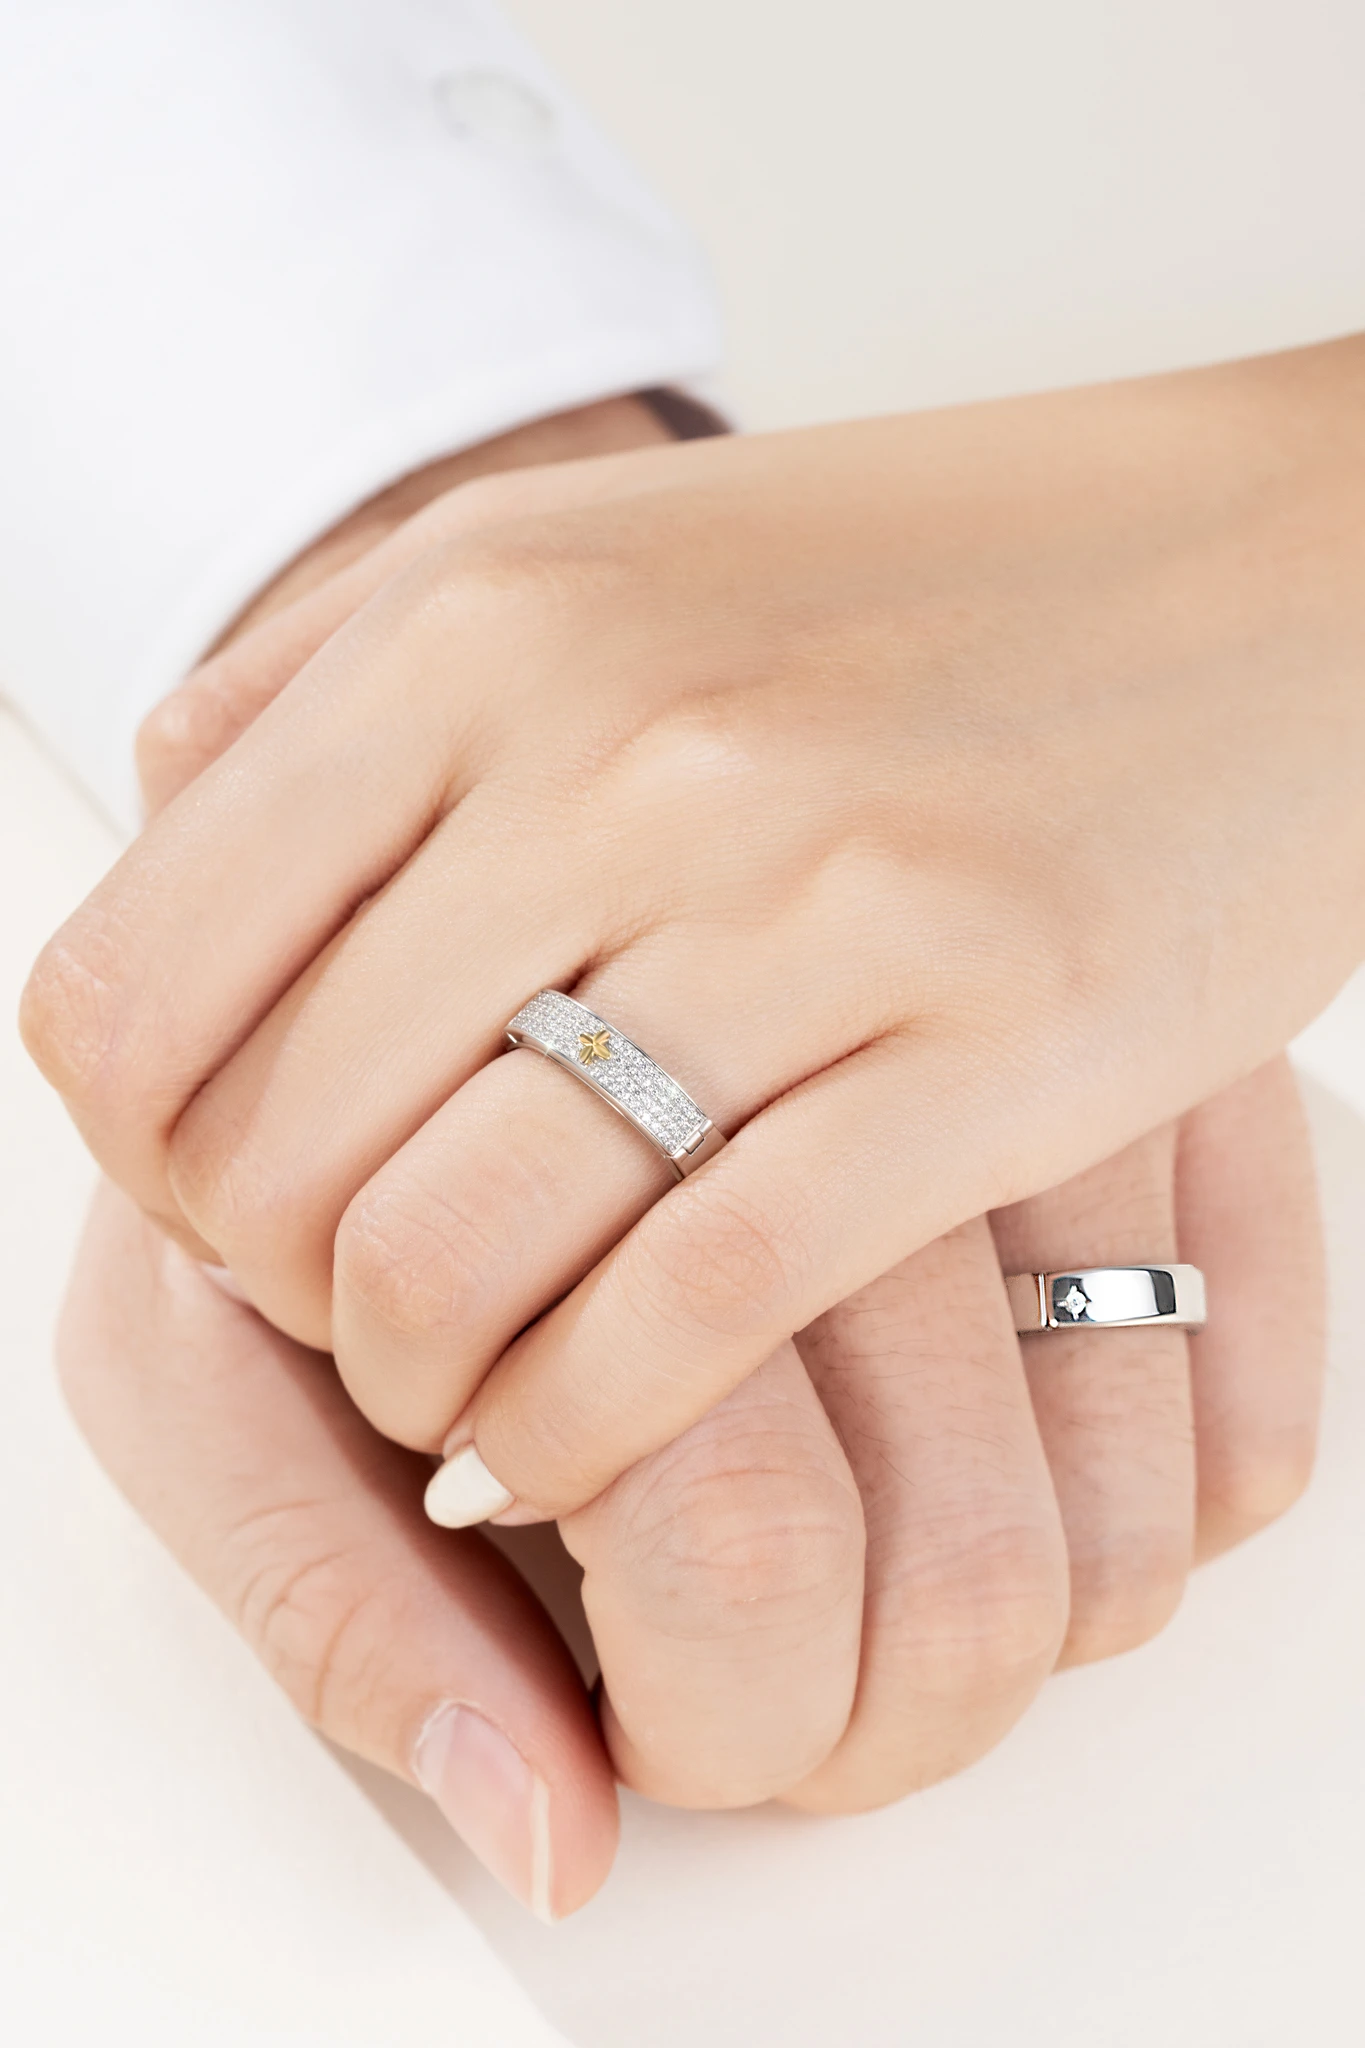 Cách đeo nhẫn cưới chuẩn nhất dành cho cặp đôi